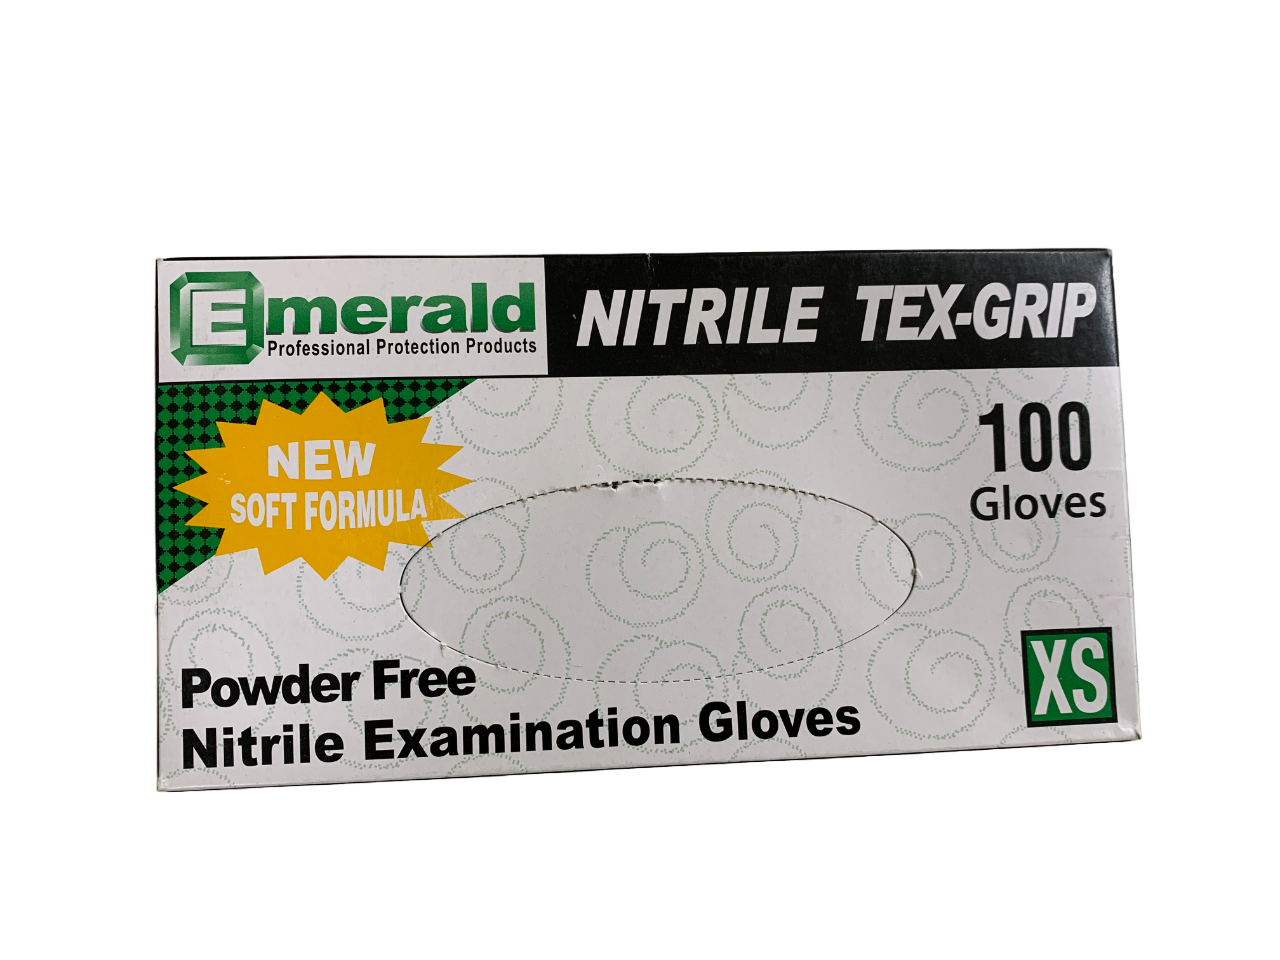 Emeral Nitrile Tex-Grip Gloves Box